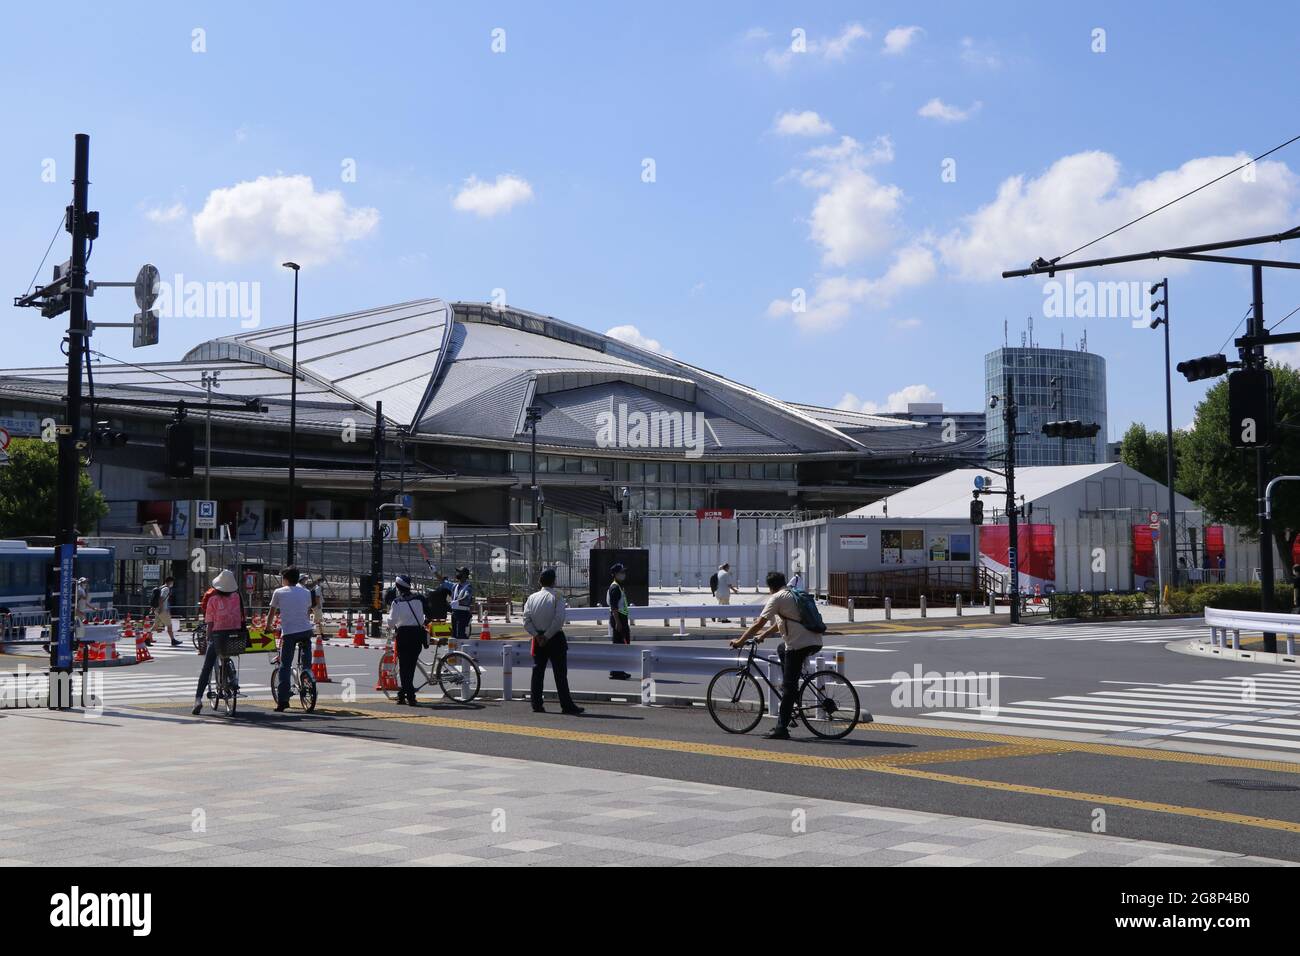 Gare de Sendagaya où se trouve la gare proche du Stade National, lieu principal des Jeux Olympiques de Tokyo en 2020. Tokyo, 22 juillet 2020. Banque D'Images